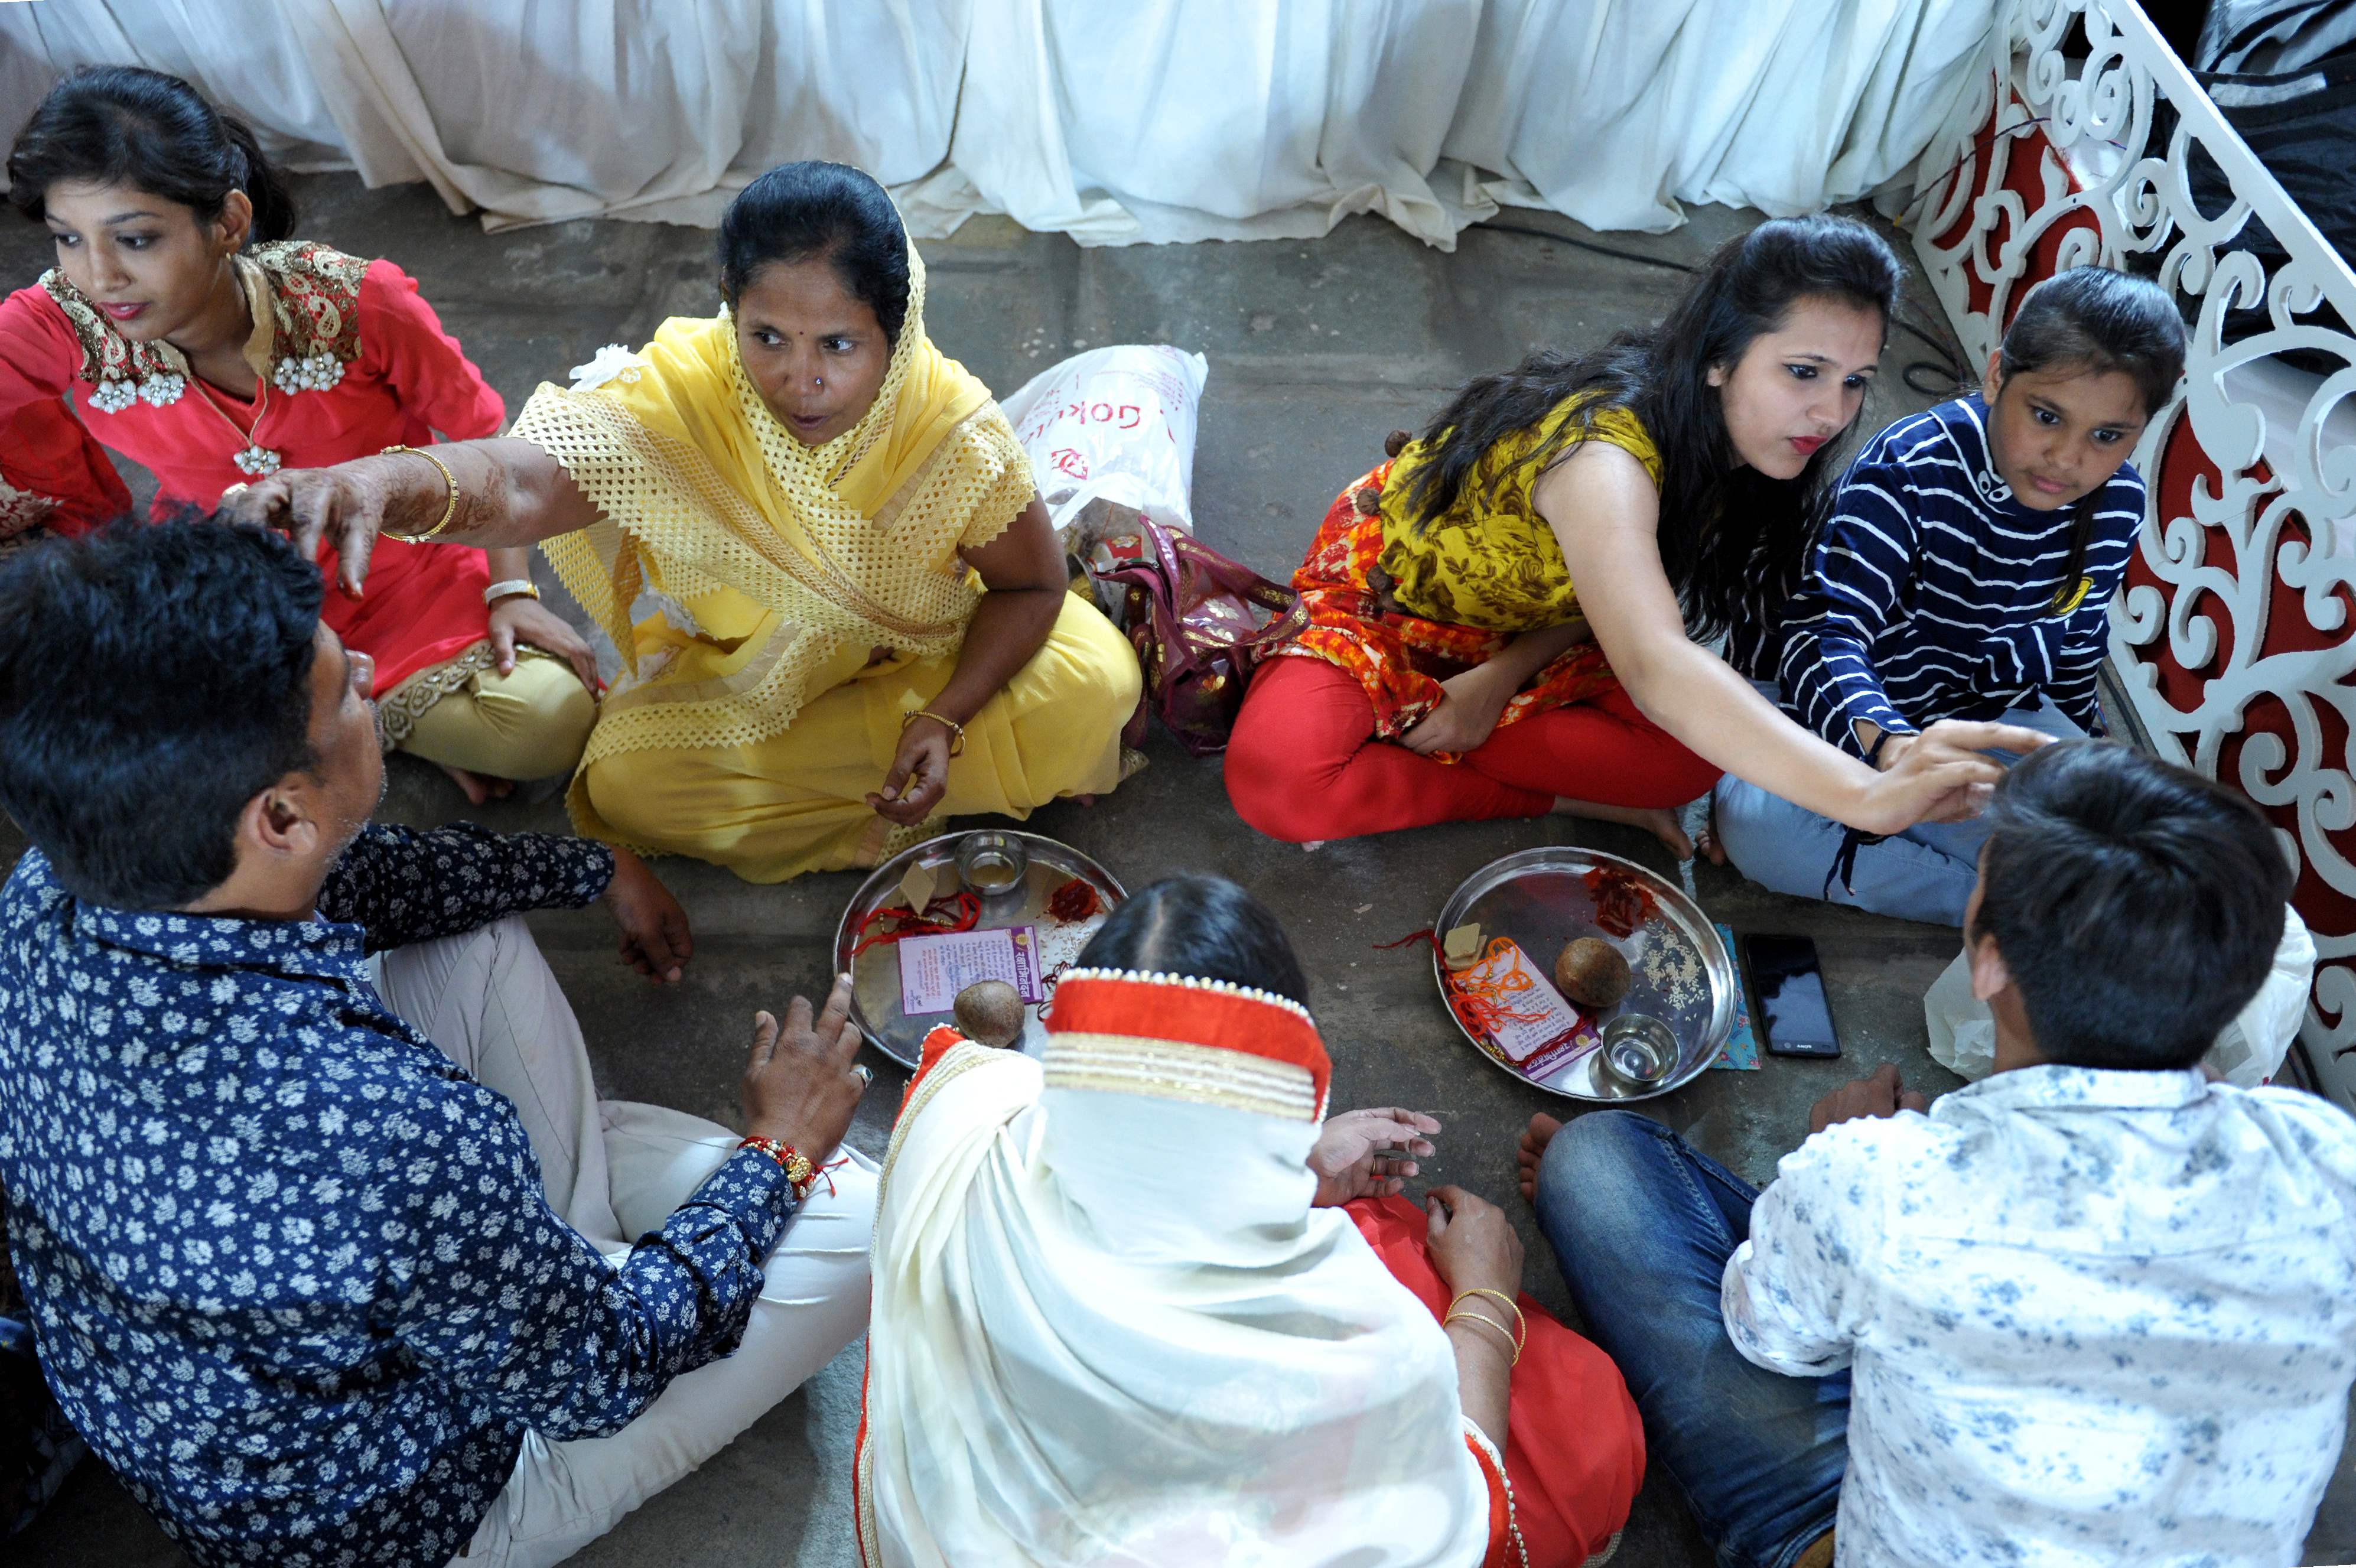 طالبات بالهند يجرين طقوس احتفالات دينية